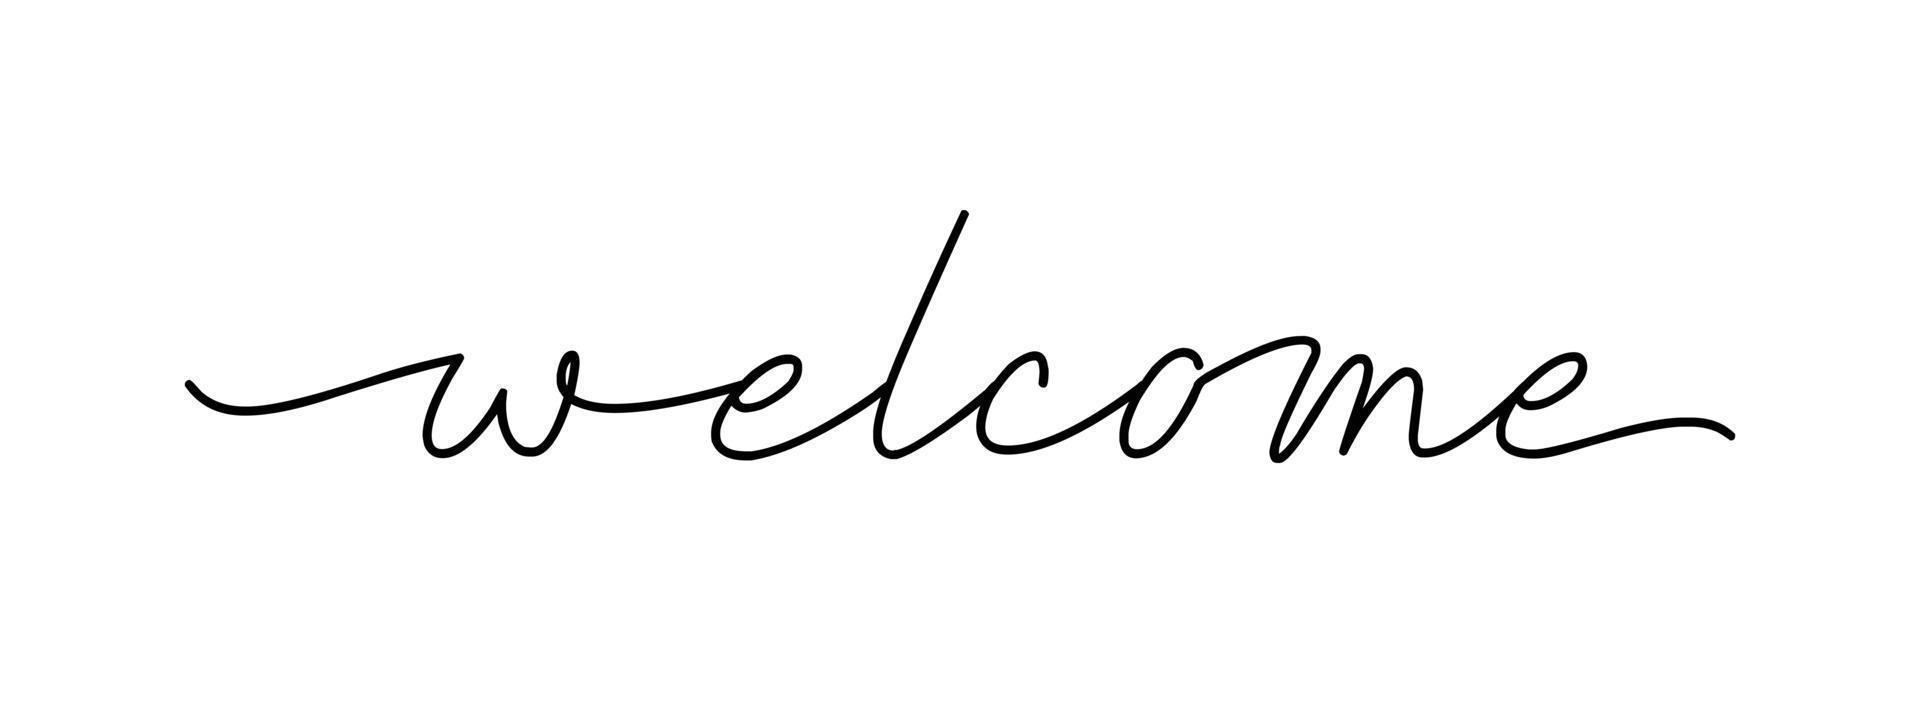 Bienvenue - lettrage à l'encre noire de vecteur isolé sur fond blanc. carte de bienvenue de calligraphie cursive continue sur une ligne